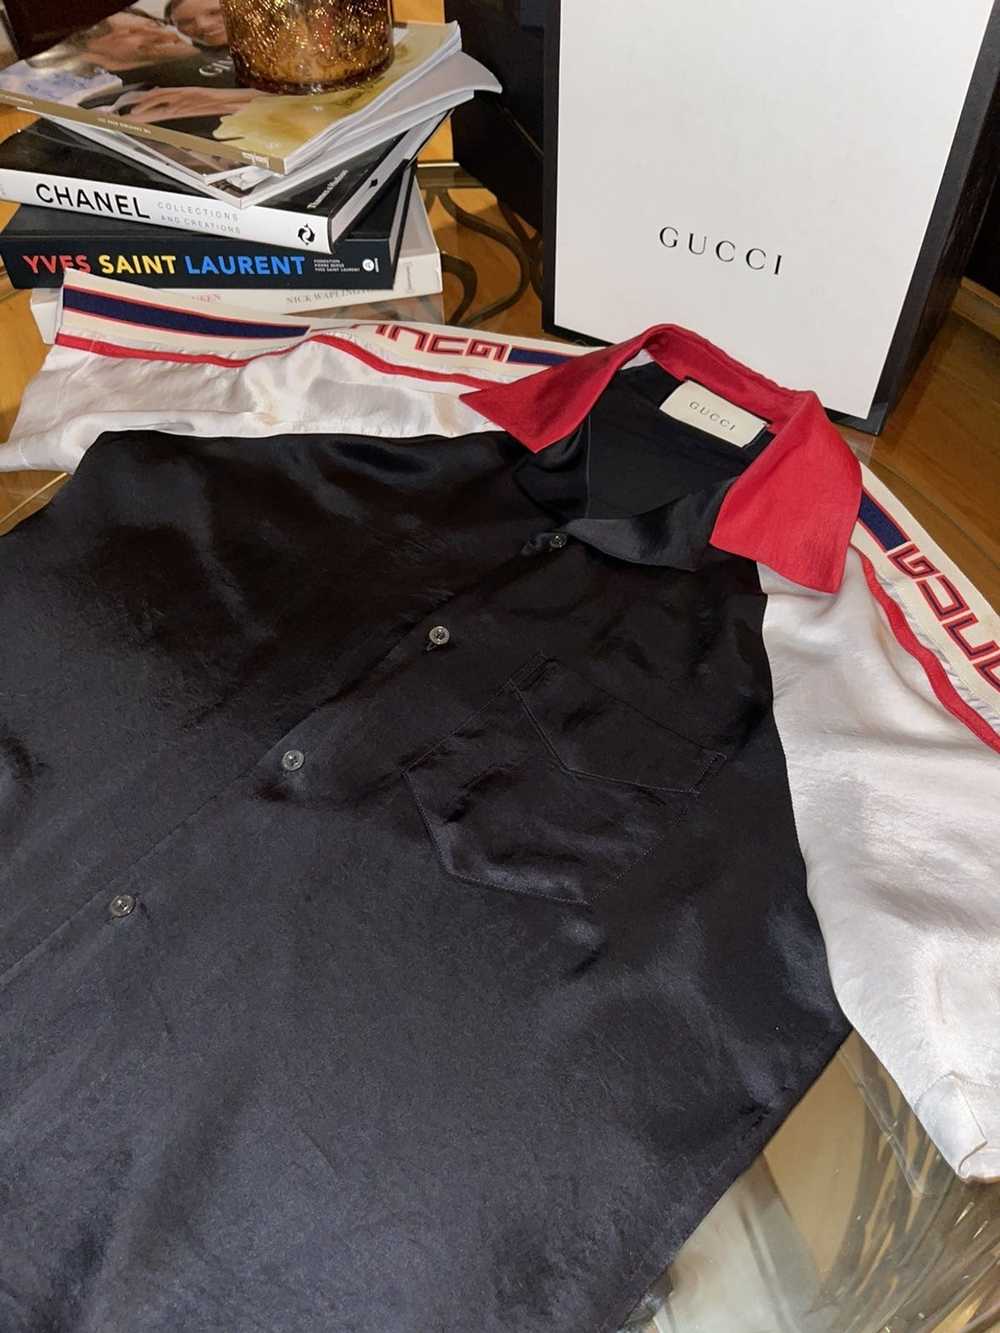 Gucci Gucci Ace-Tate Bowling Shirt (silk) - image 2